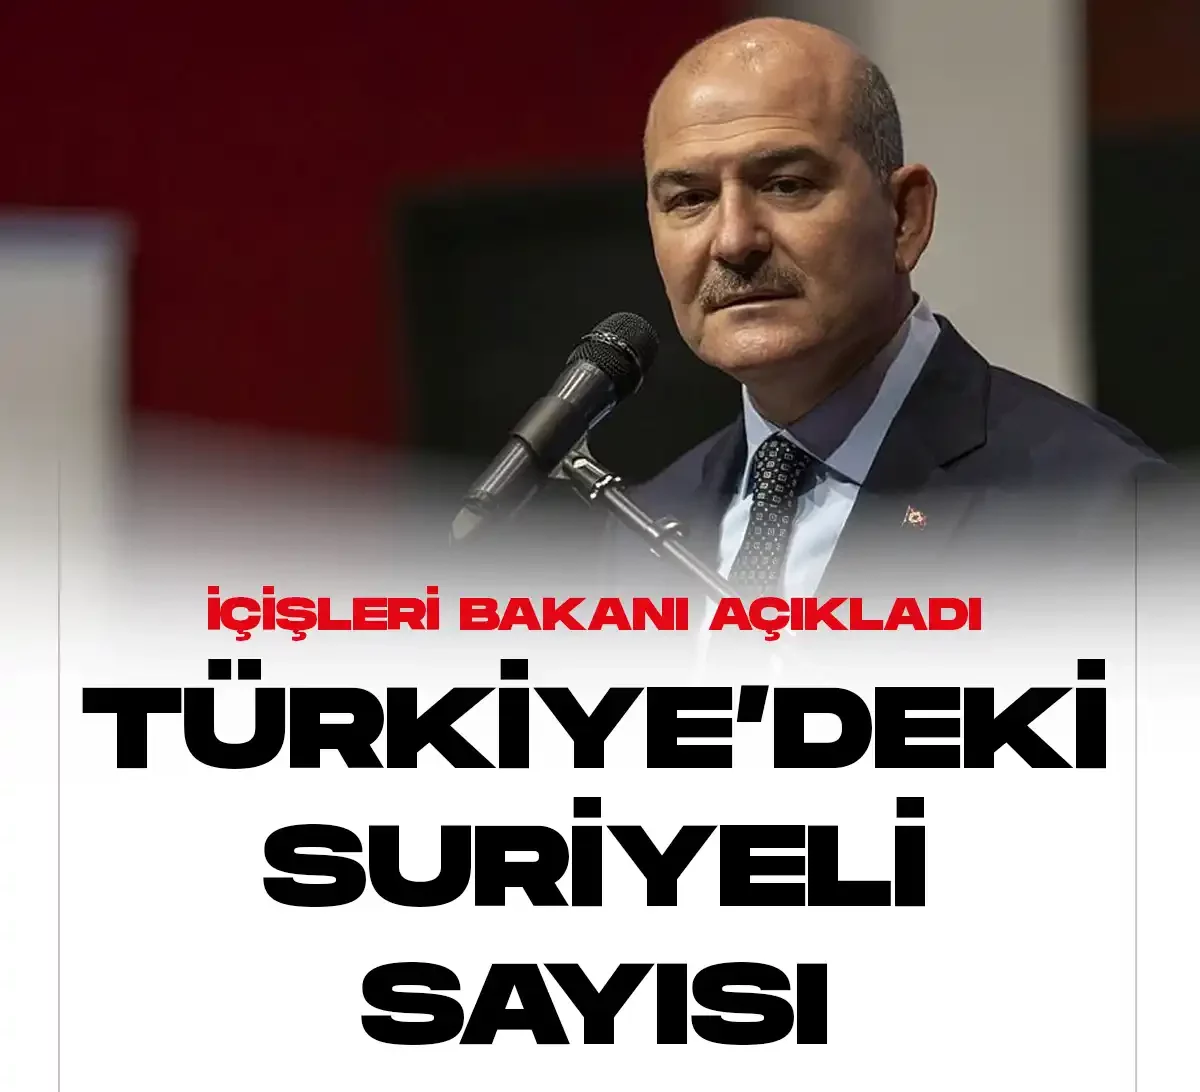 İçişleri Bakanı Soylu, Türkiye'deki suriyeli sayısını açıkladı.